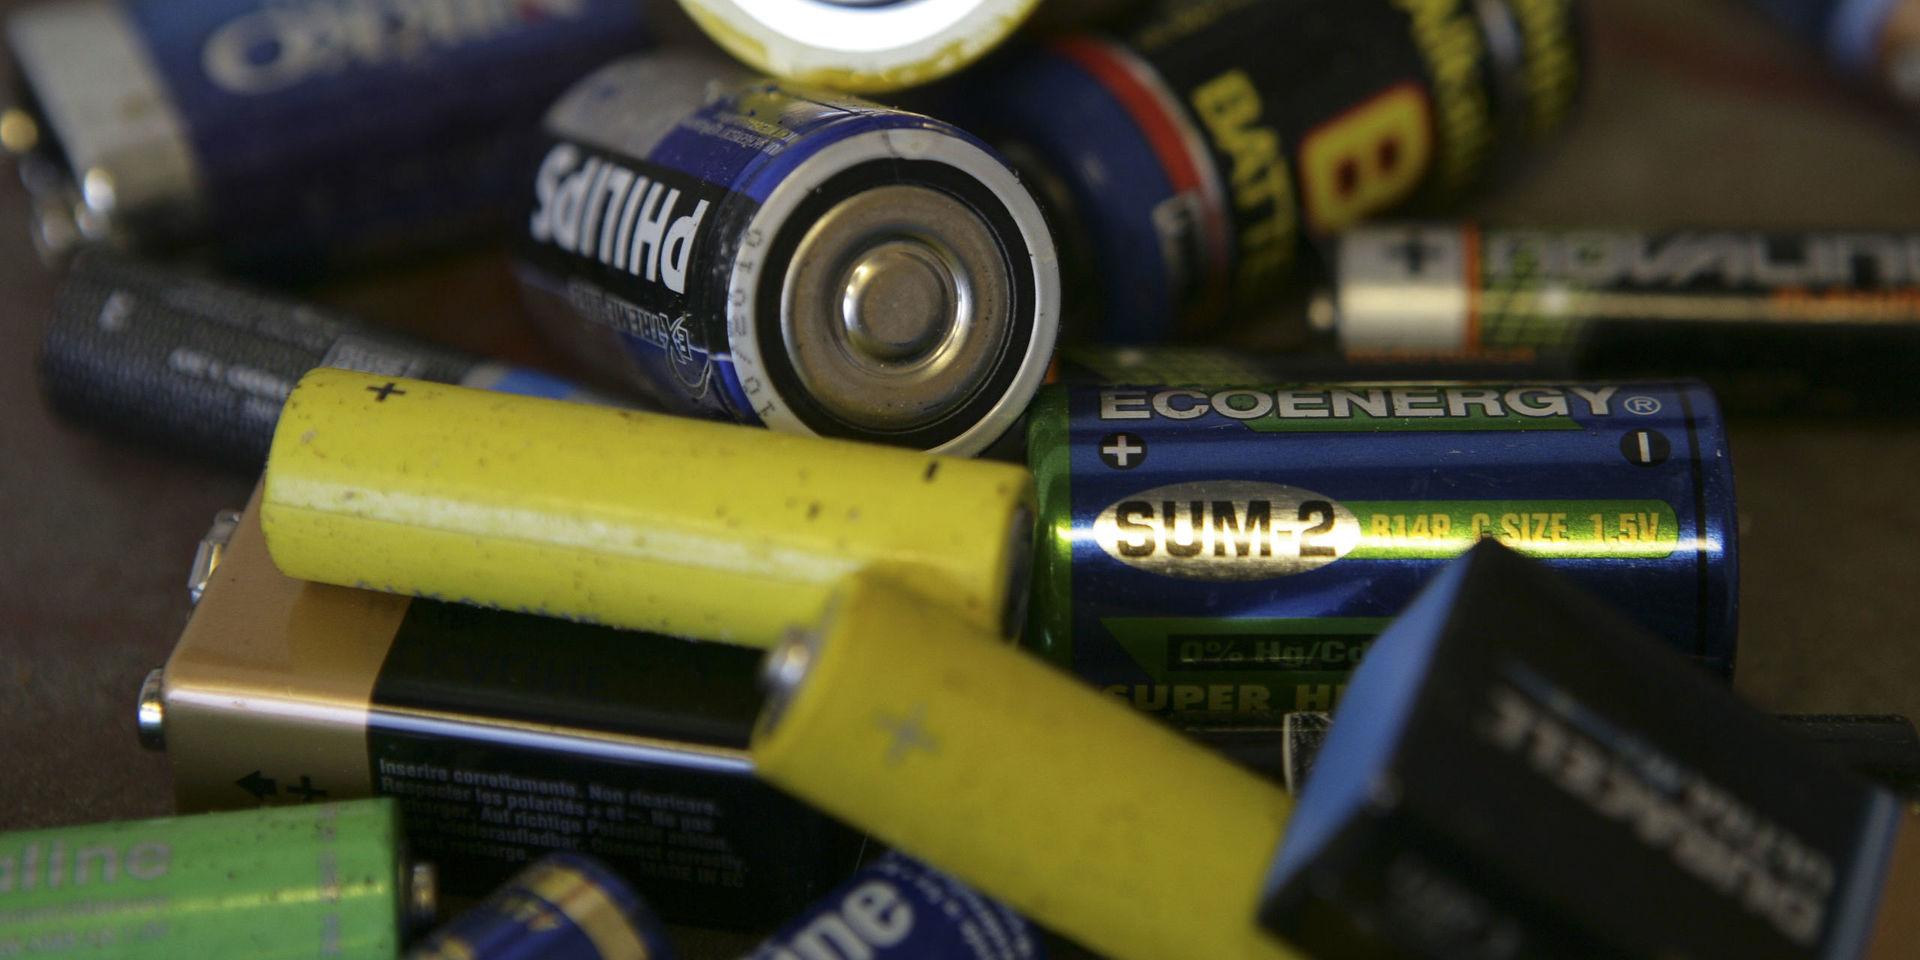 Avfall från uttjänta batterier har olagligt grävts ner på en åker i trakten av Kumla i Örebro län, enligt uppgifter till Expressen. Arkivbild.